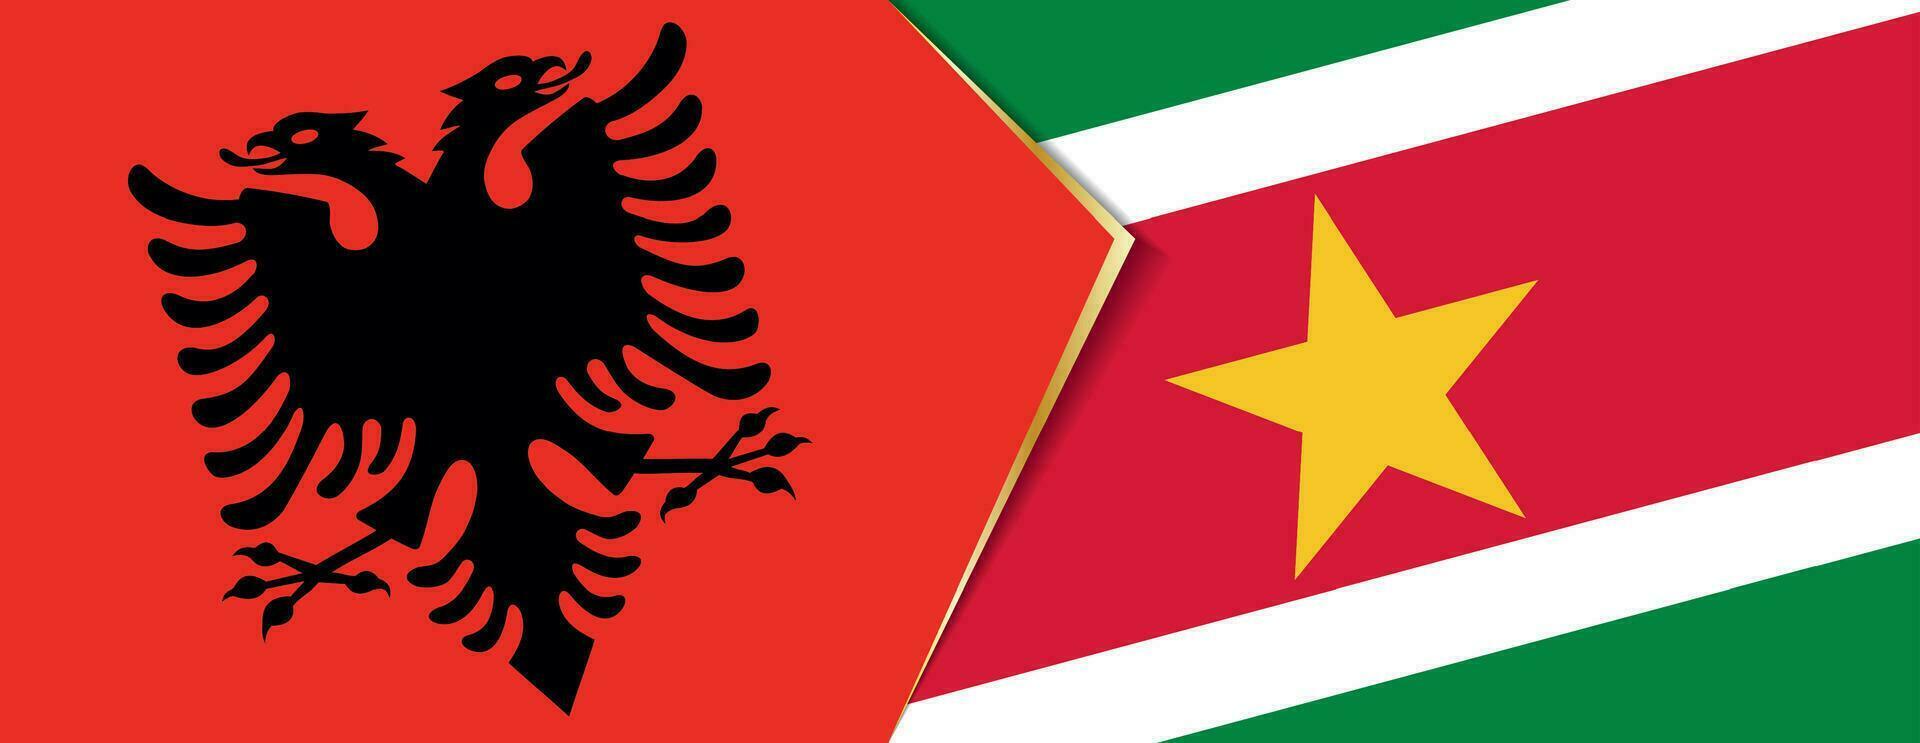 Albania e suriname bandiere, Due vettore bandiere.